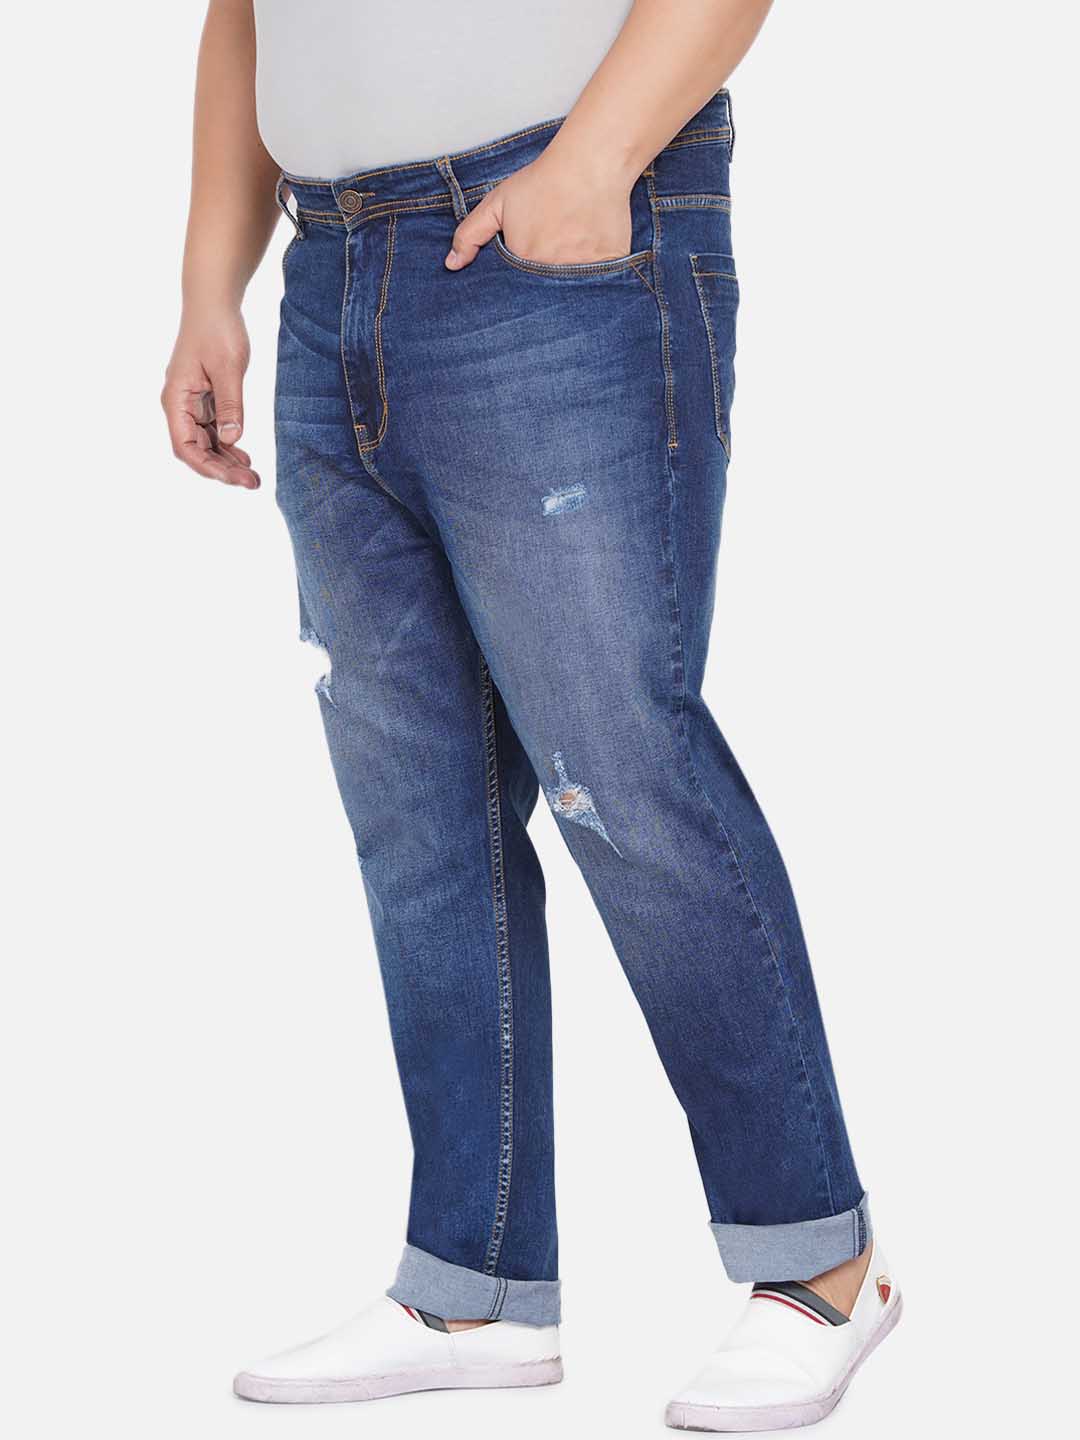 bottomwear/jeans/EJPJ25043/ejpj25043-4.jpg